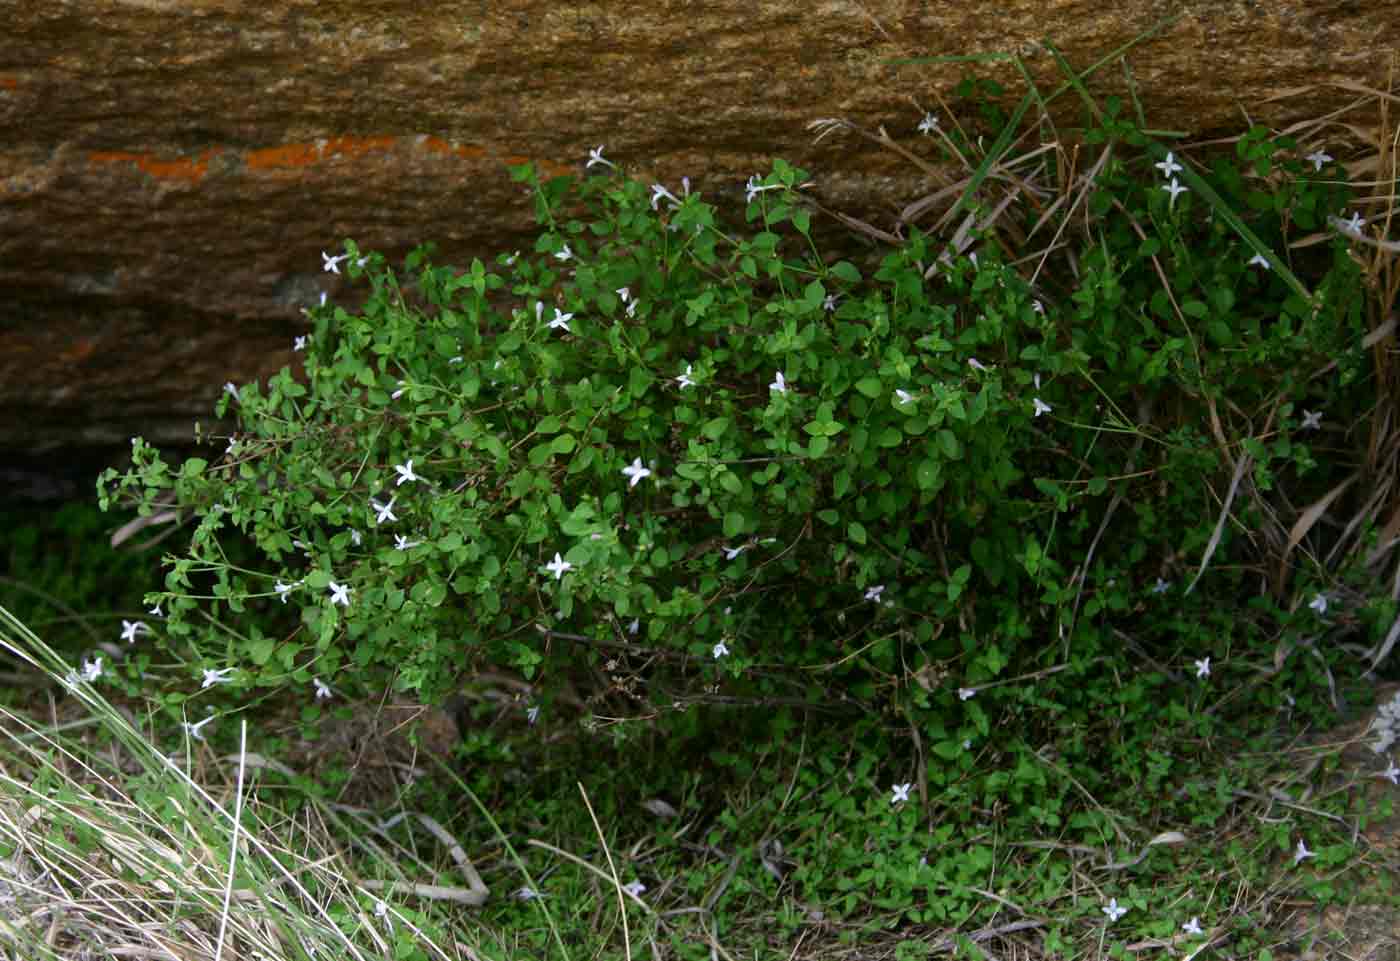 Oldenlandia rupicola var. rupicola